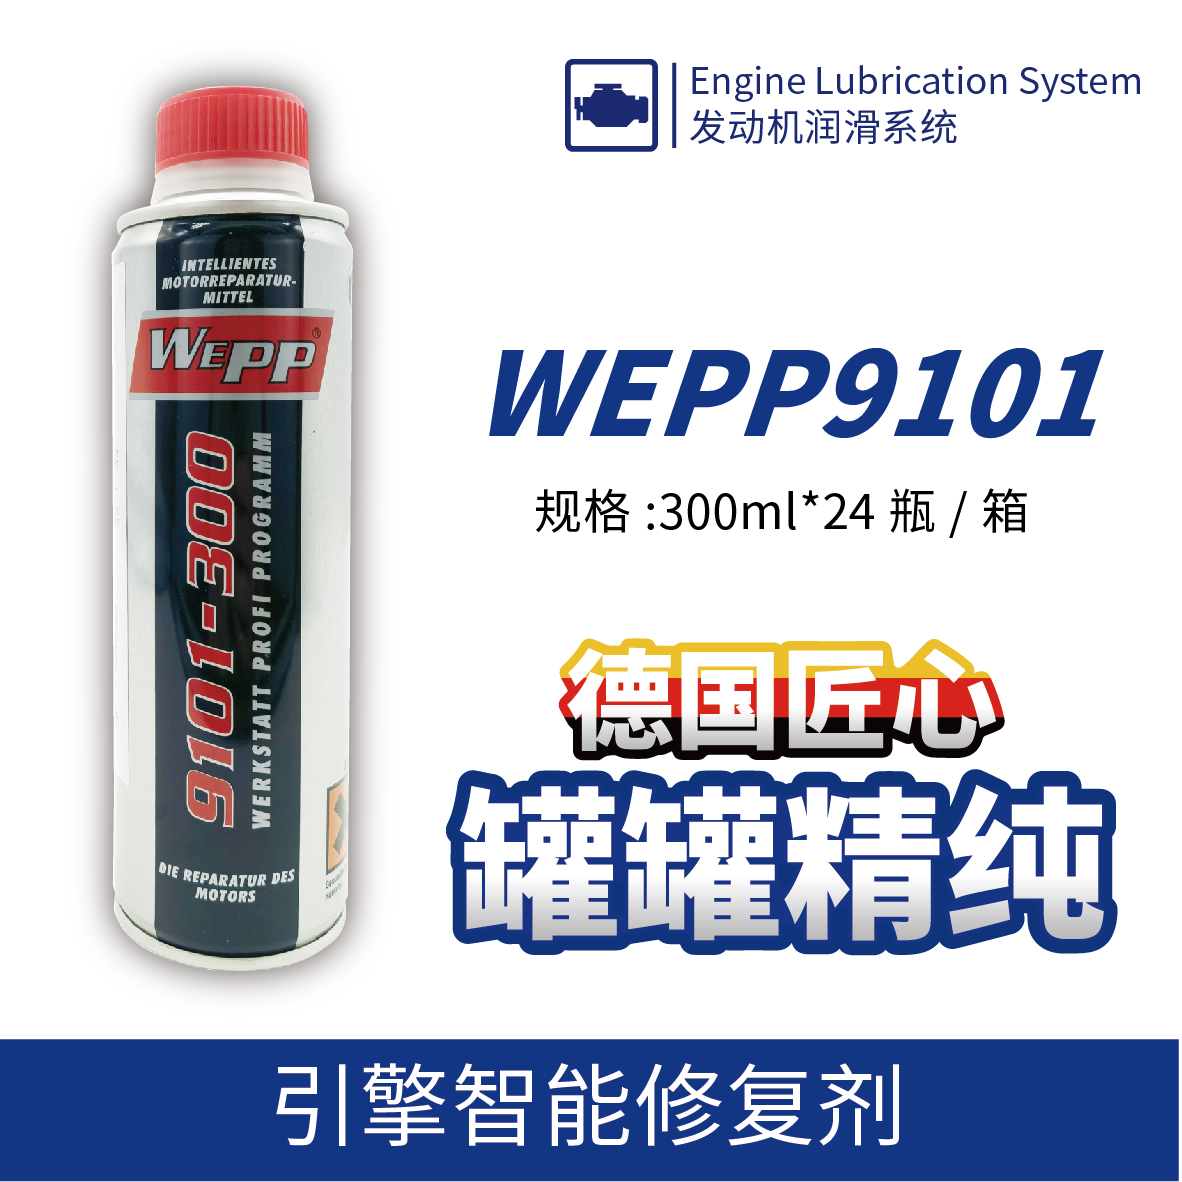 WEPP9101 引擎智能修复剂